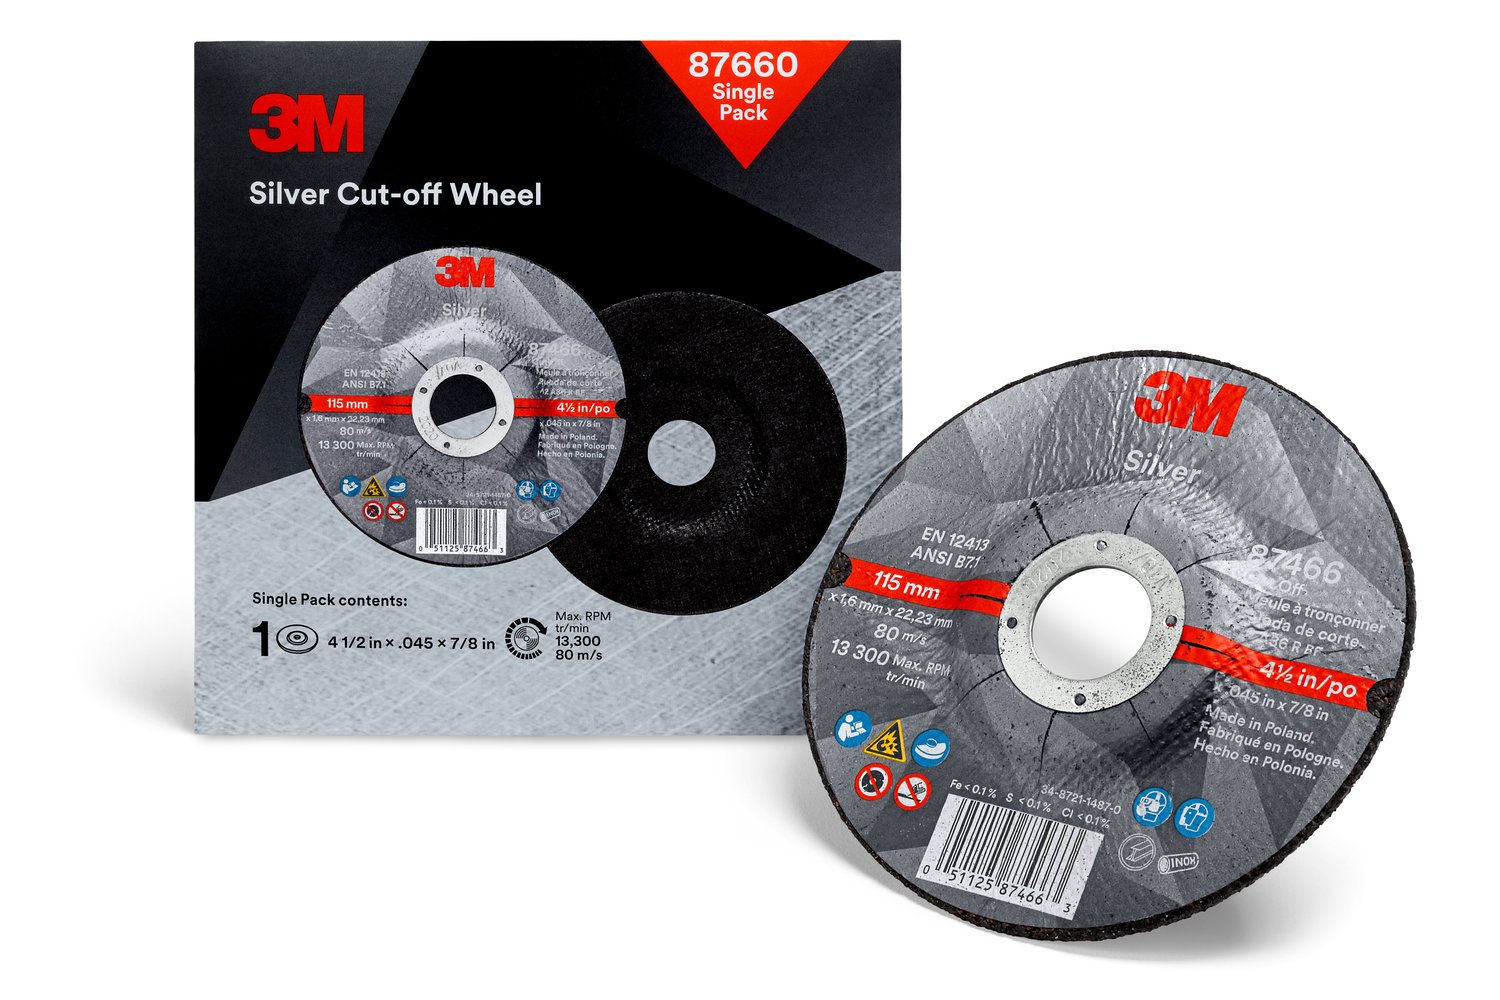 7100147388 - 3M Silver Cut-Off Wheel, 87660, T27, 4.5 in x .045 in x 7/8 in, Single
Pack, 10 ea/Case